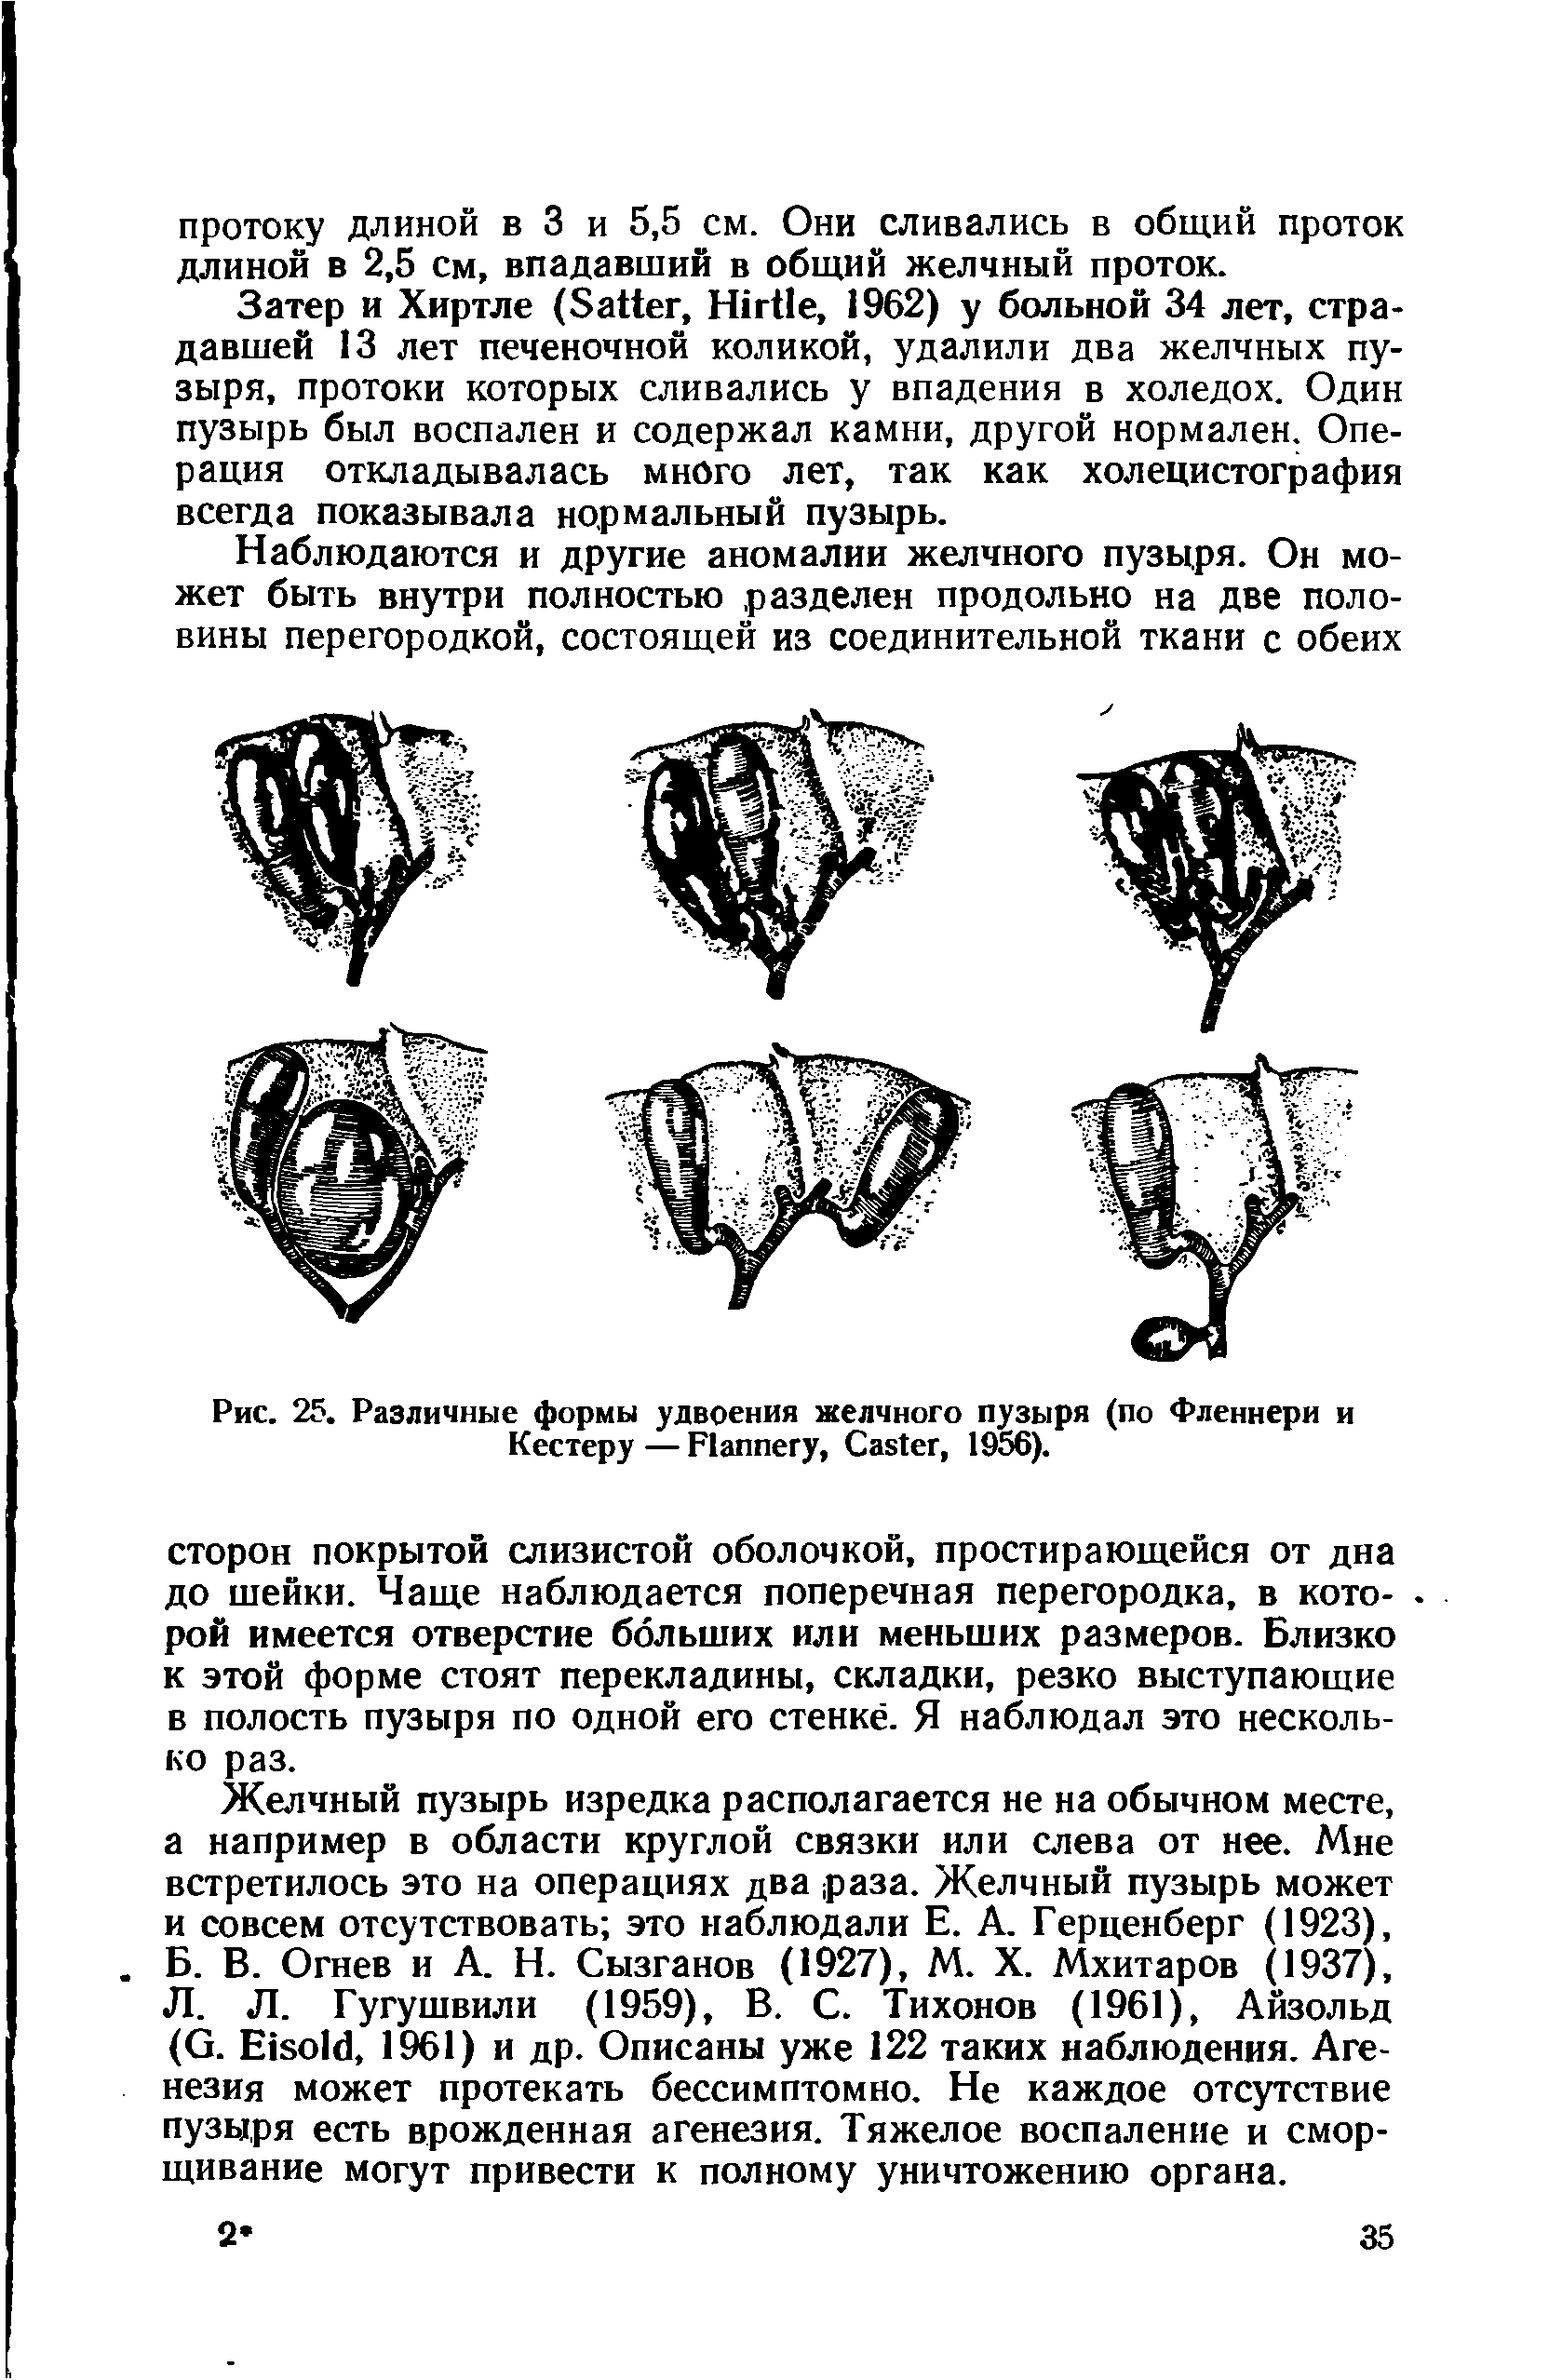 Рис. 25. Различные формы удвоения желчного пузыря (по Фленнери и Кестеру — F , C , 1956).